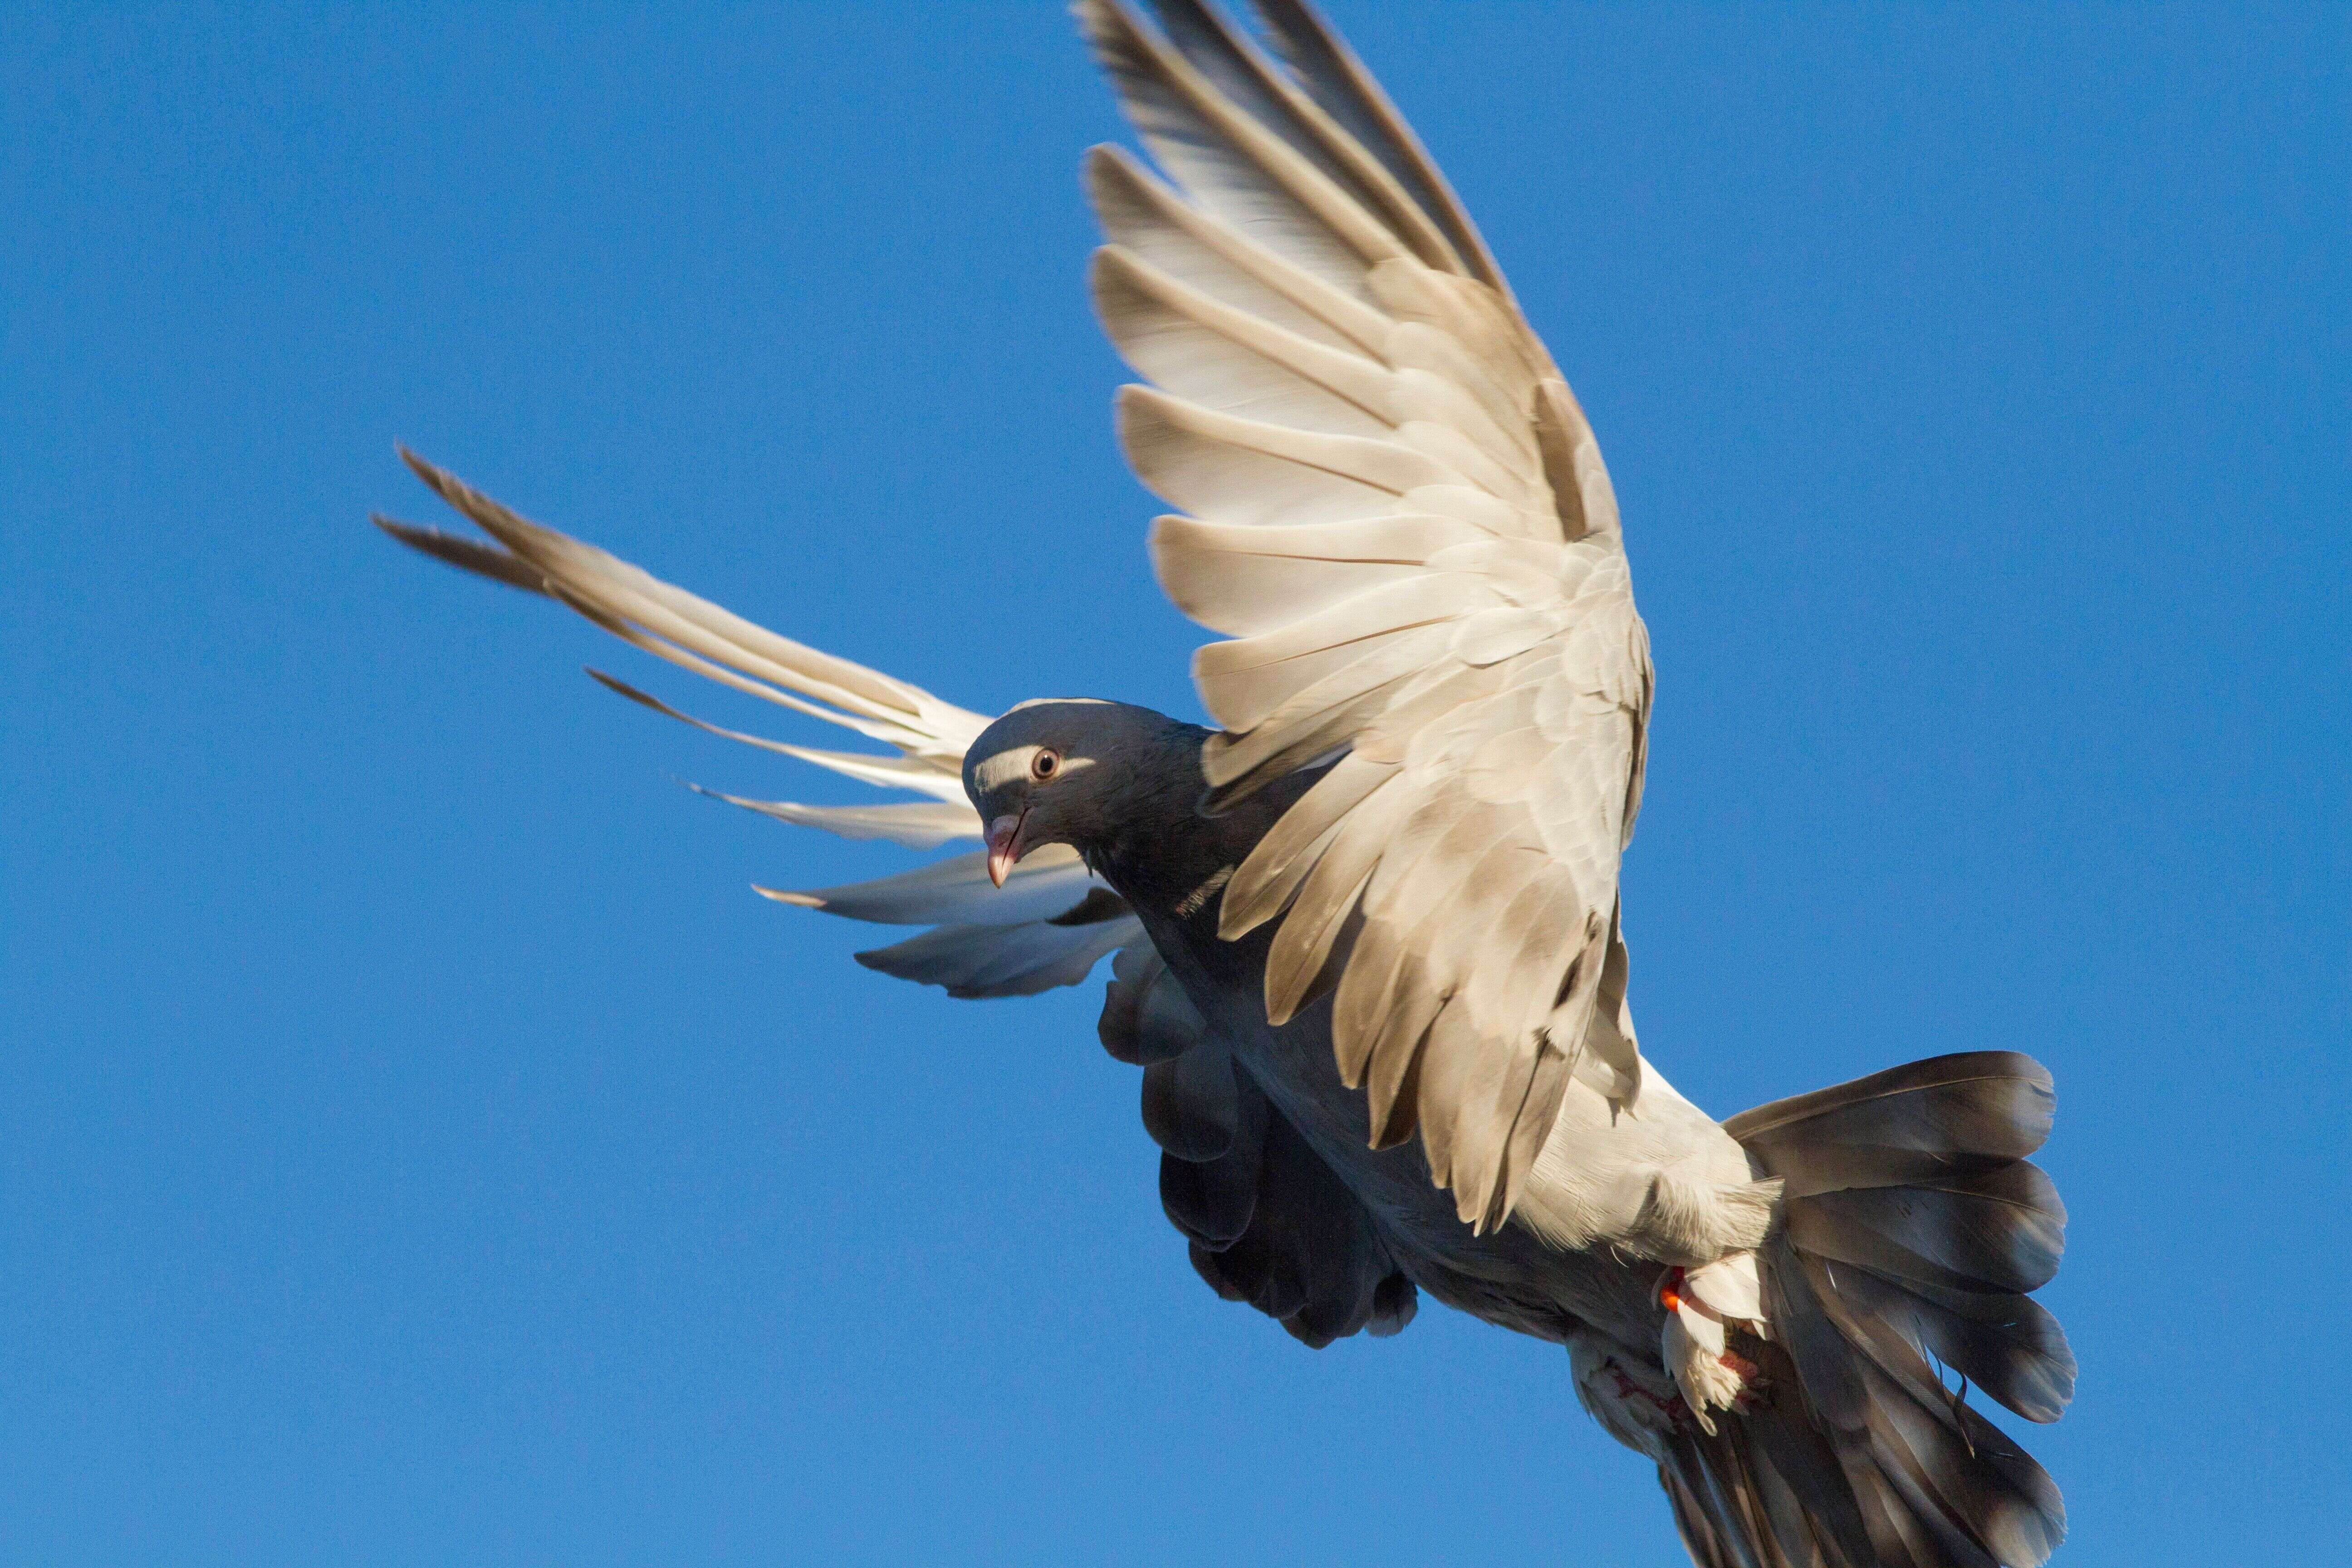 Soupçonné d'être entré illégalement en Australie, ce pigeon pourrait échapper à l'euthanasie (photo d'illustration: un pigeon voyageur de la race des Tumbler turcs, similaire à 